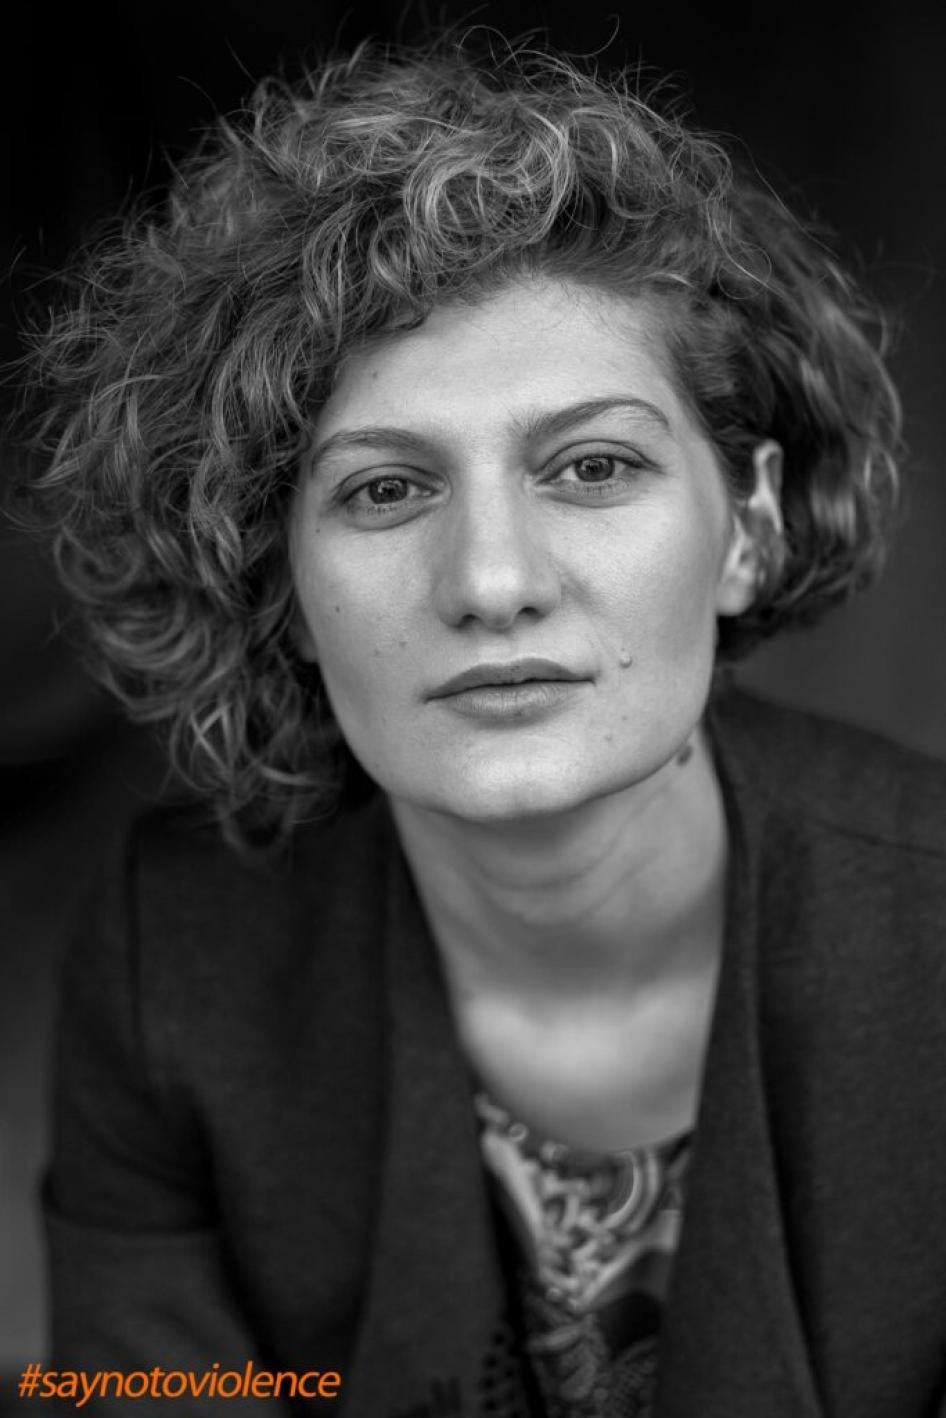 Baia Pataraia, avocate spécialiste des droits de l’homme et activiste, Tbilissi, Géorgie.